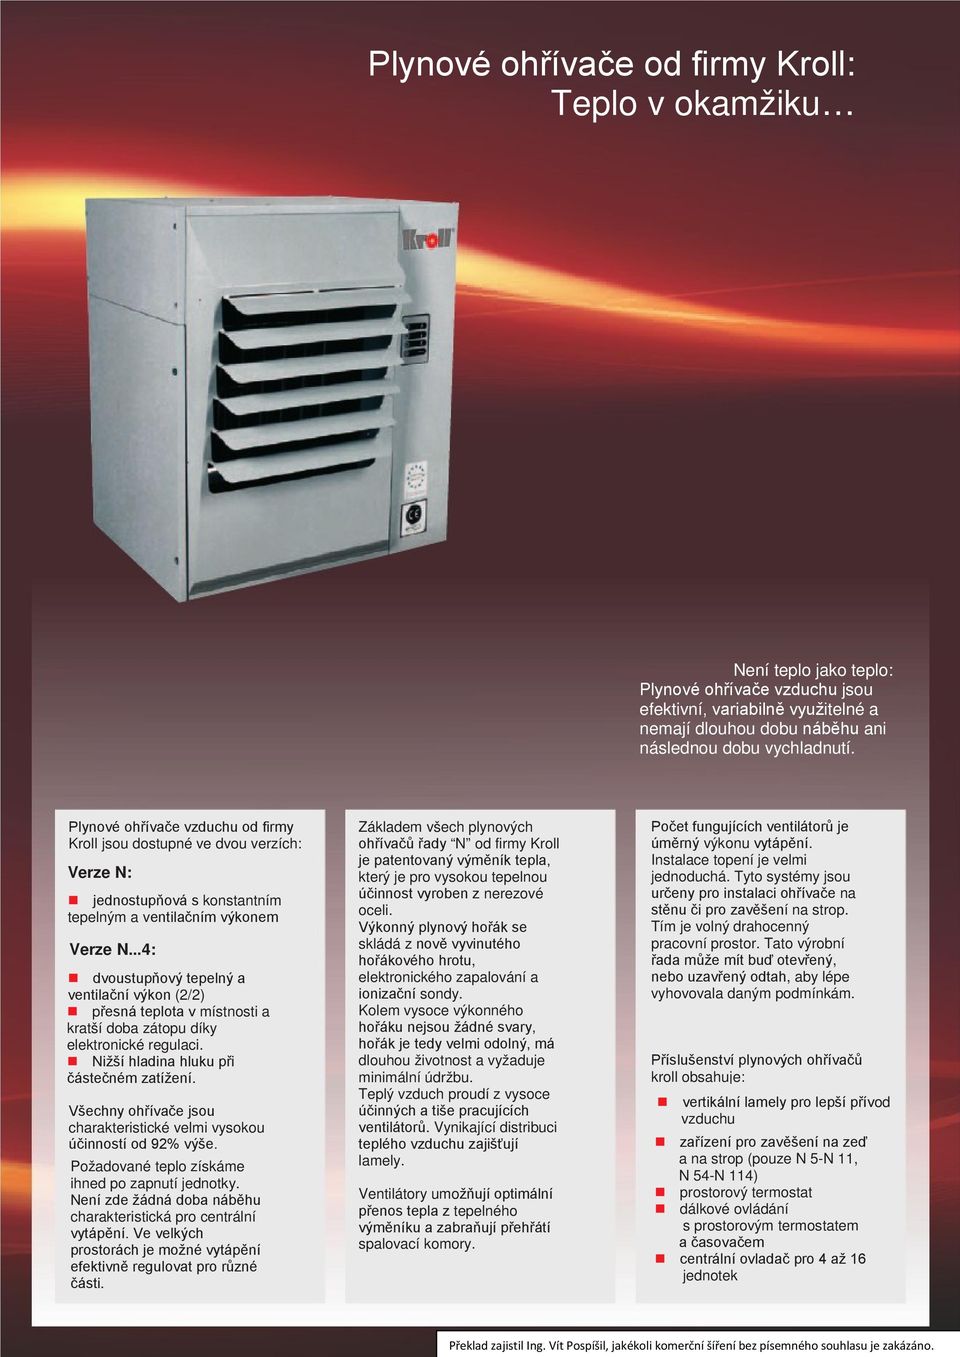 ..4: dvoustupňový tepelný a ventilační výkon (2/2) přesná teplota v místnosti a kratší doba zátopu díky elektronické regulaci. Nižší hladina hluku při částečném zatížení.